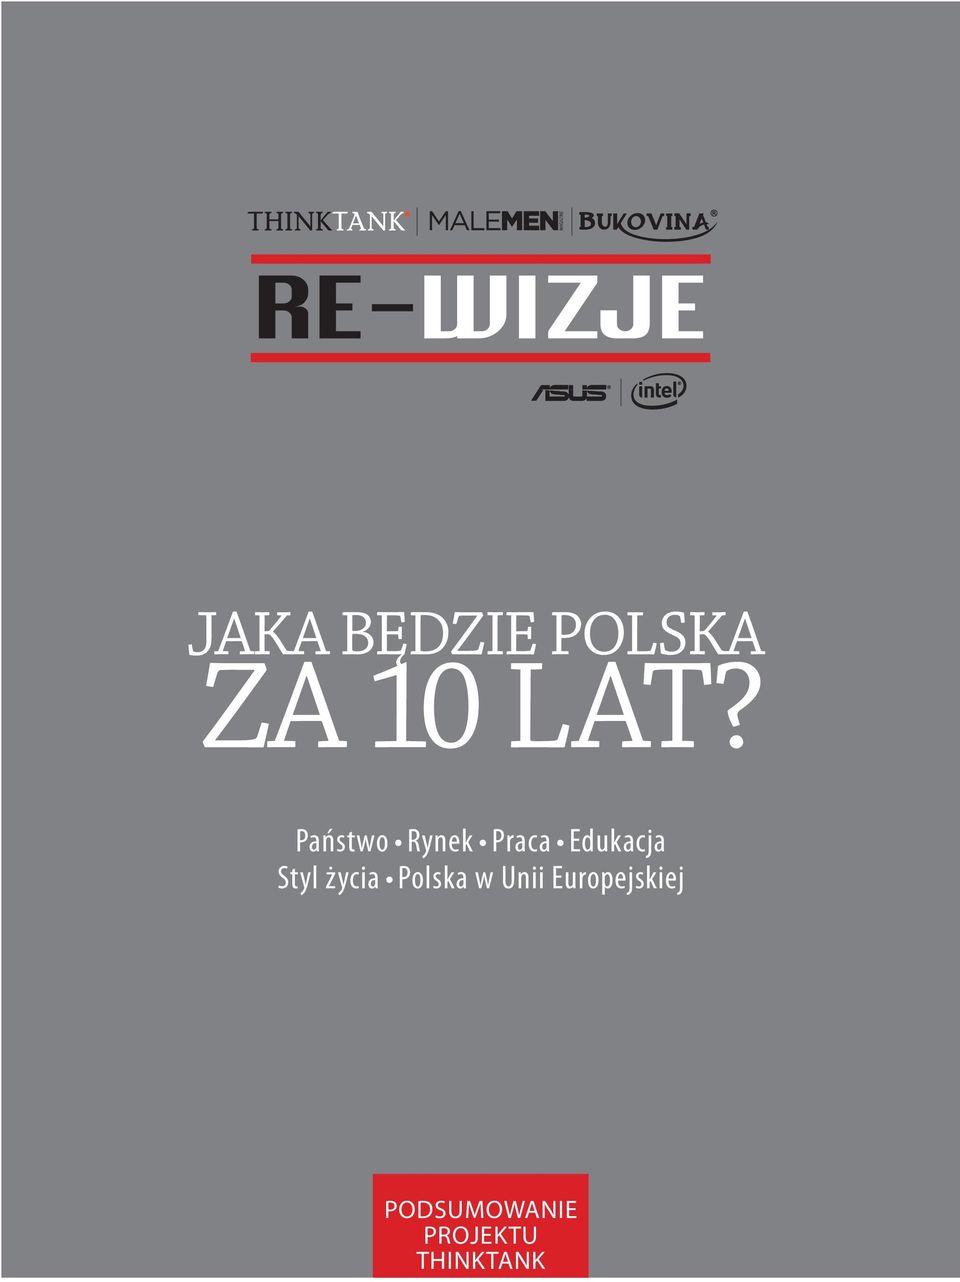 Styl życia Polska w Unii